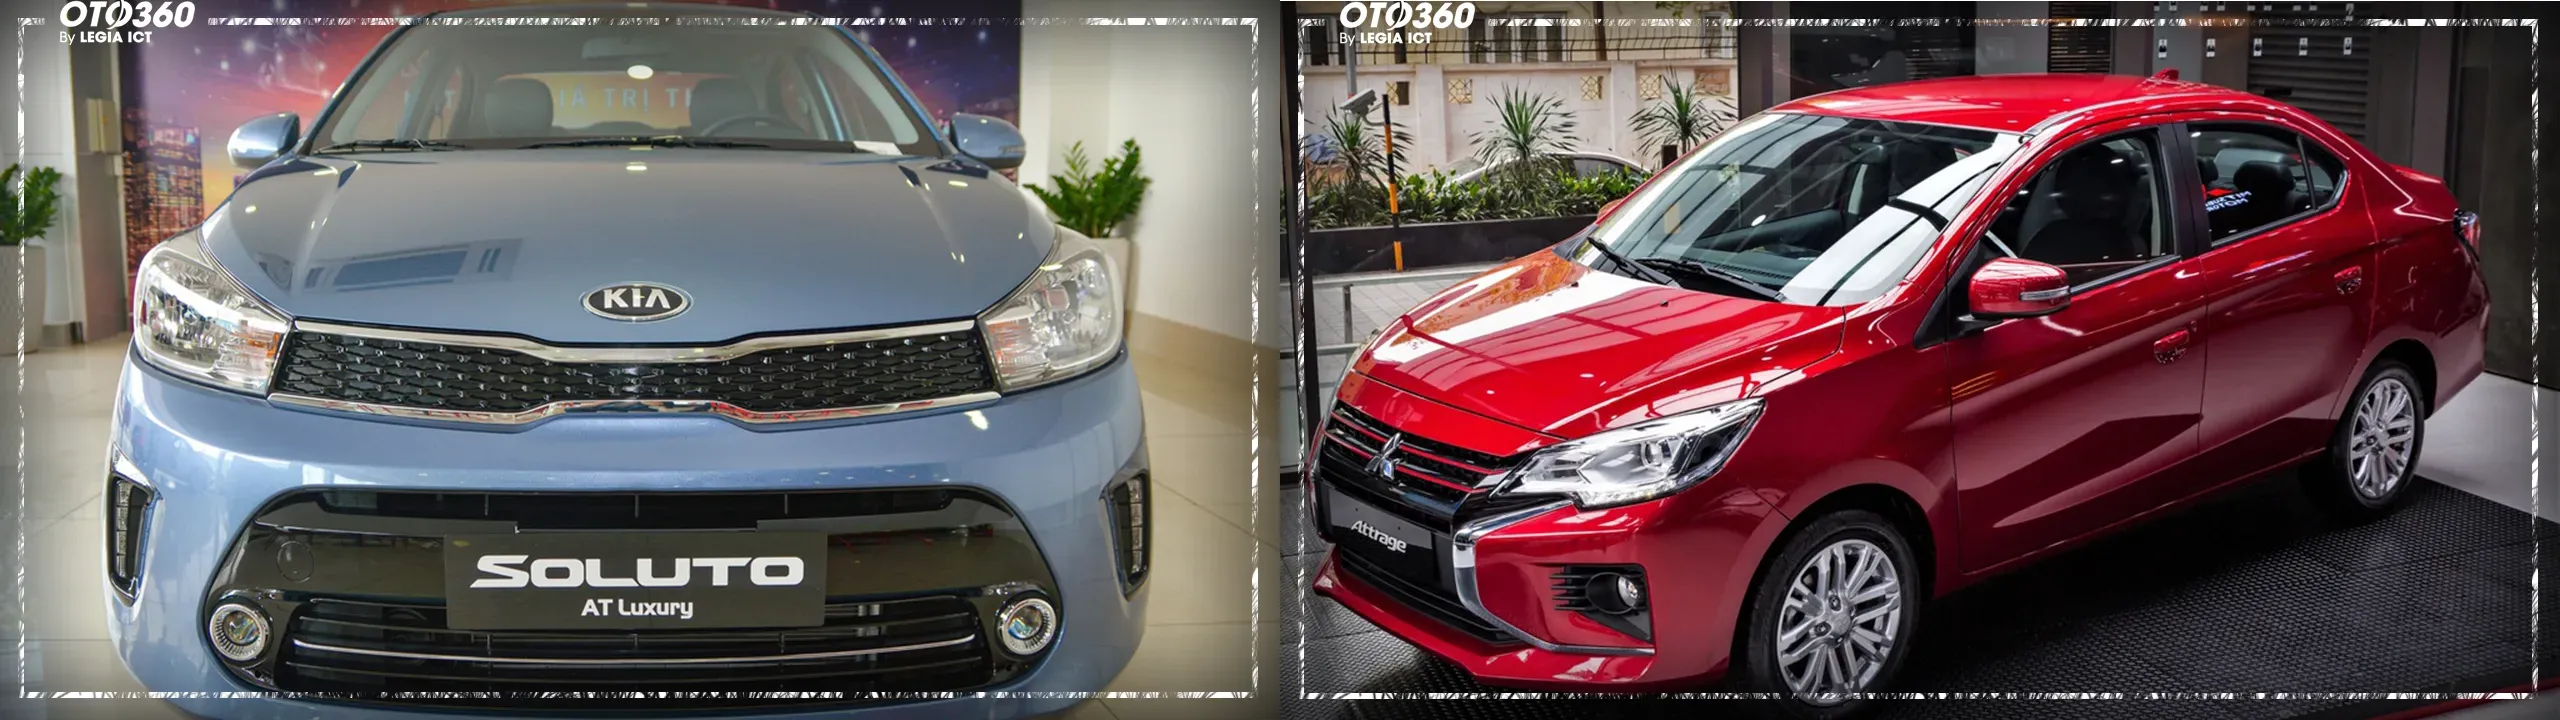 Kia Soluto phiên bản AT Luxury và Mitsubishi Attrage phiên bản CVT Premium